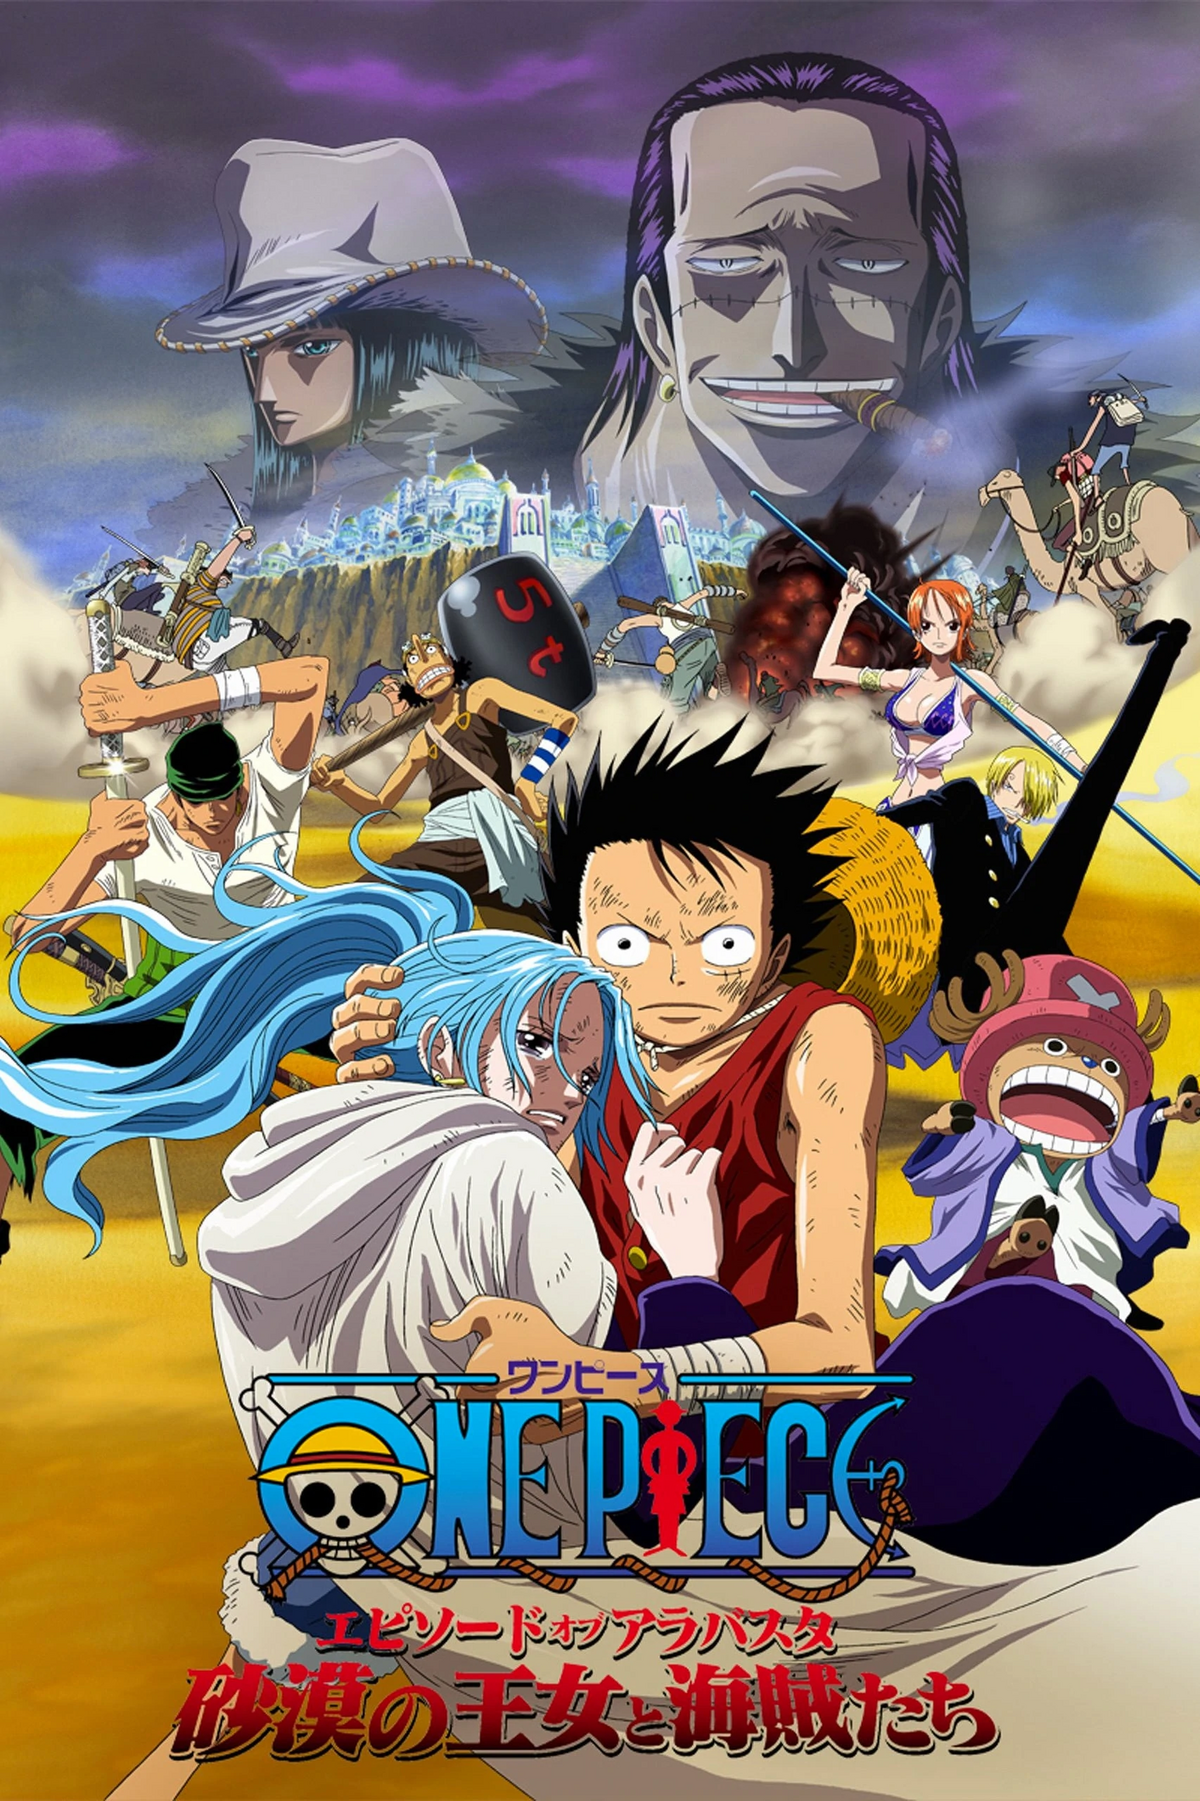 Lista de Filmes e Especiais de One Piece, Dublapédia